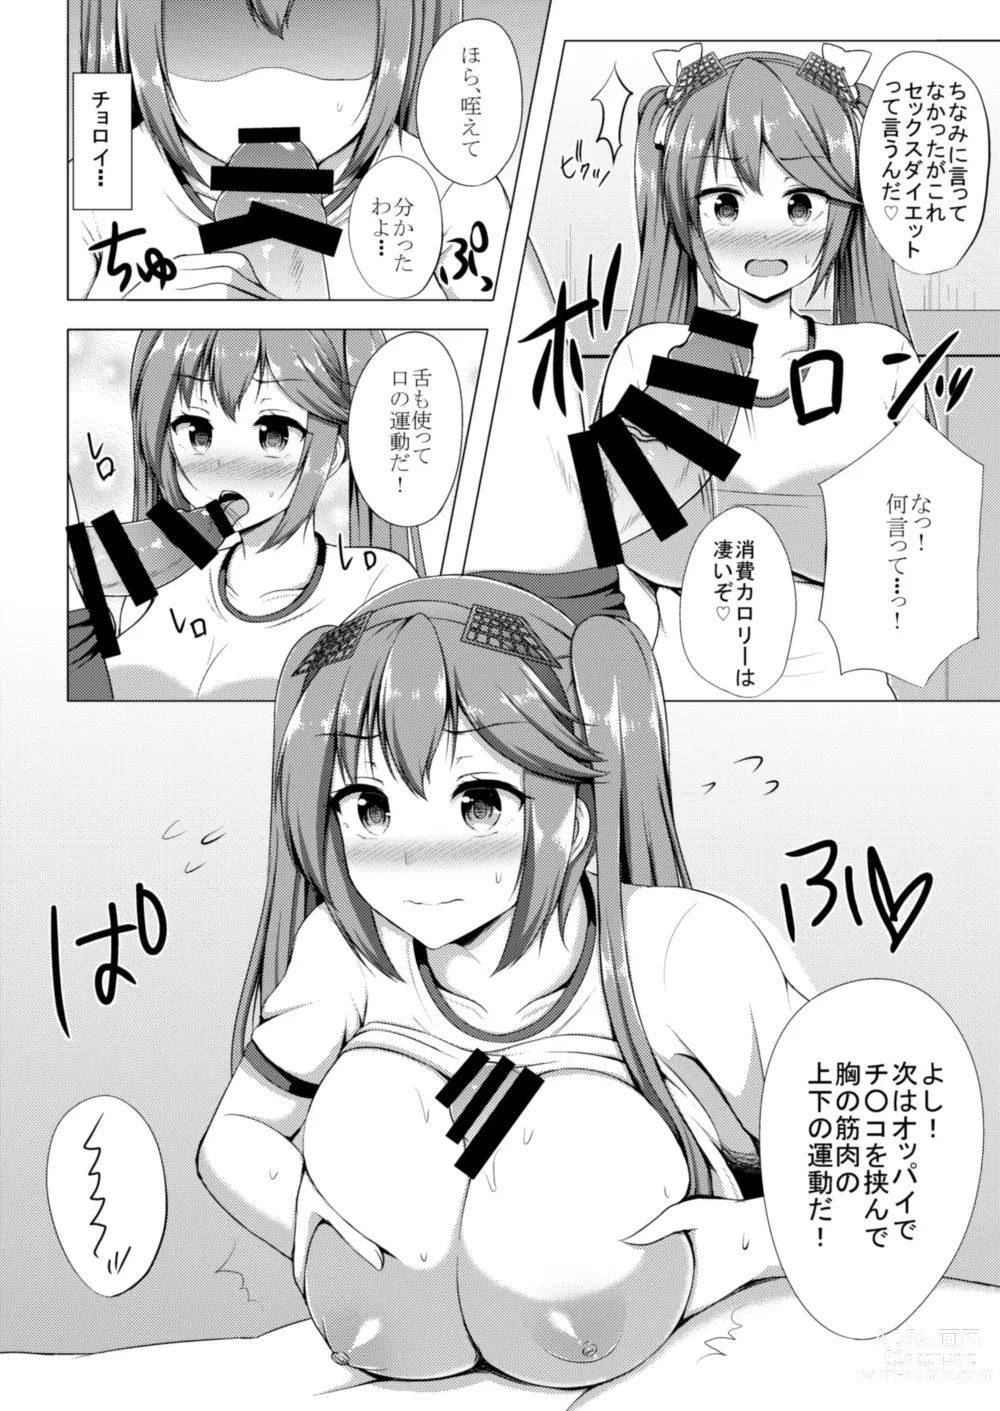 Page 5 of doujinshi Isuzu to Yoru no Training